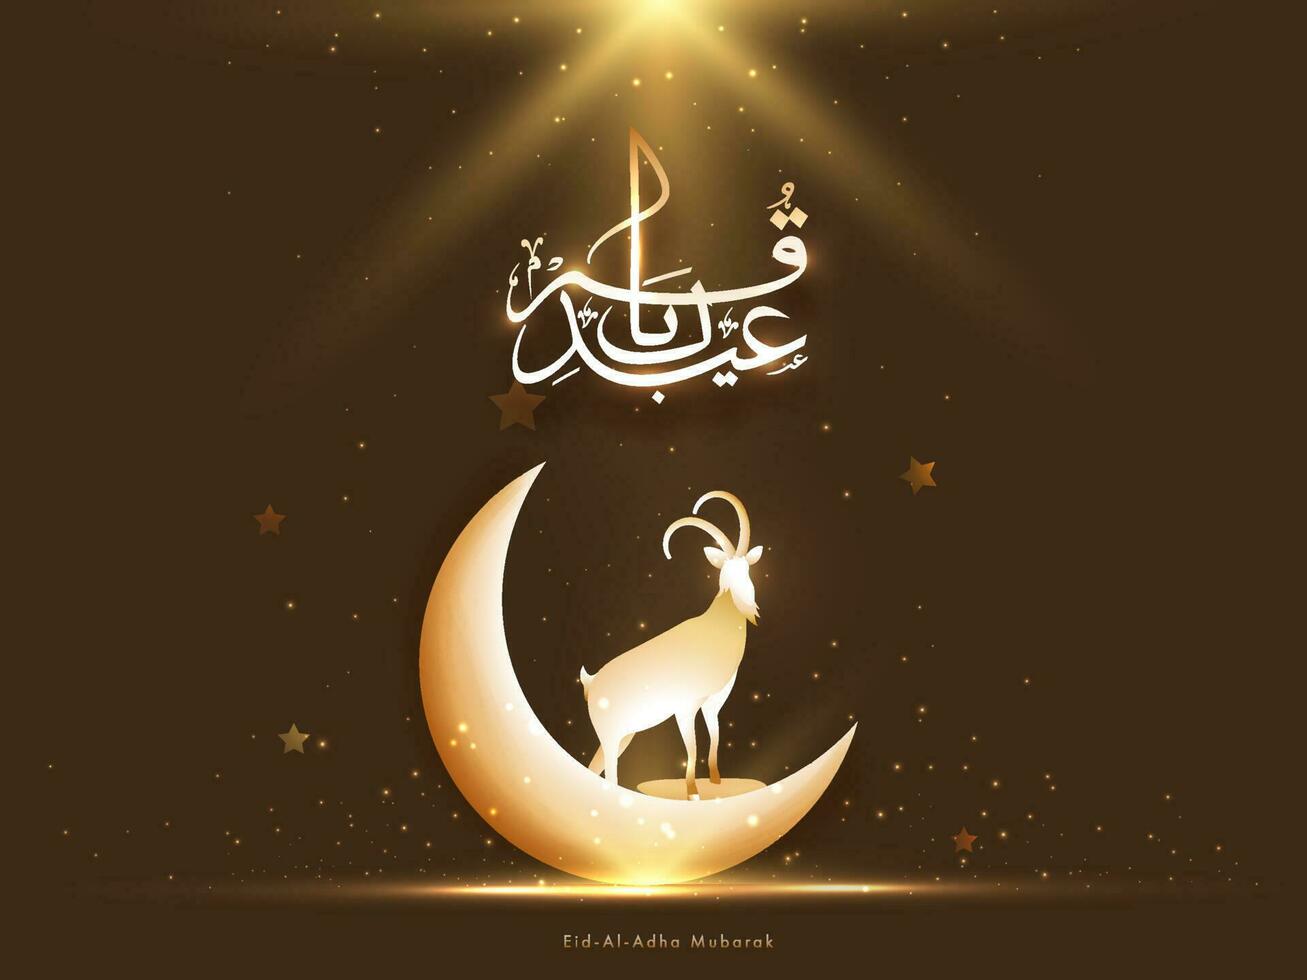 eid-al-adha Mubarak Kalligraphie im Arabisch Sprache mit 3d Halbmond Mond, Silhouette Ziege und golden funkeln Beleuchtung auf braun Hintergrund. vektor